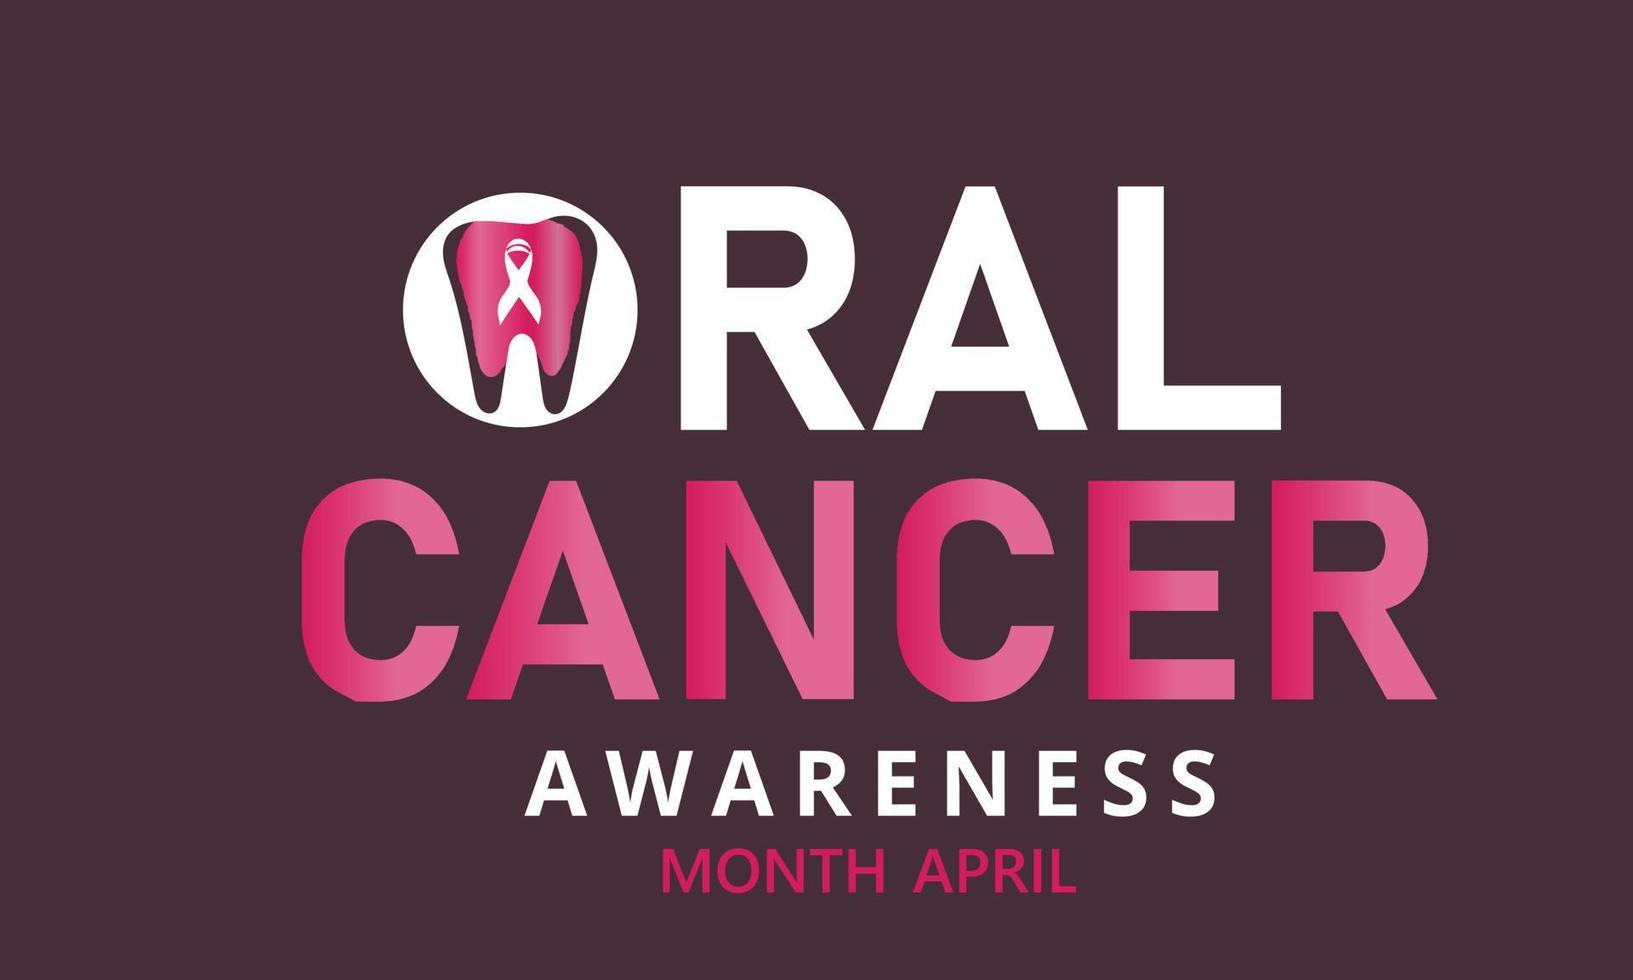 orale cancro consapevolezza mese. modello per sfondo, striscione, carta, manifesto vettore